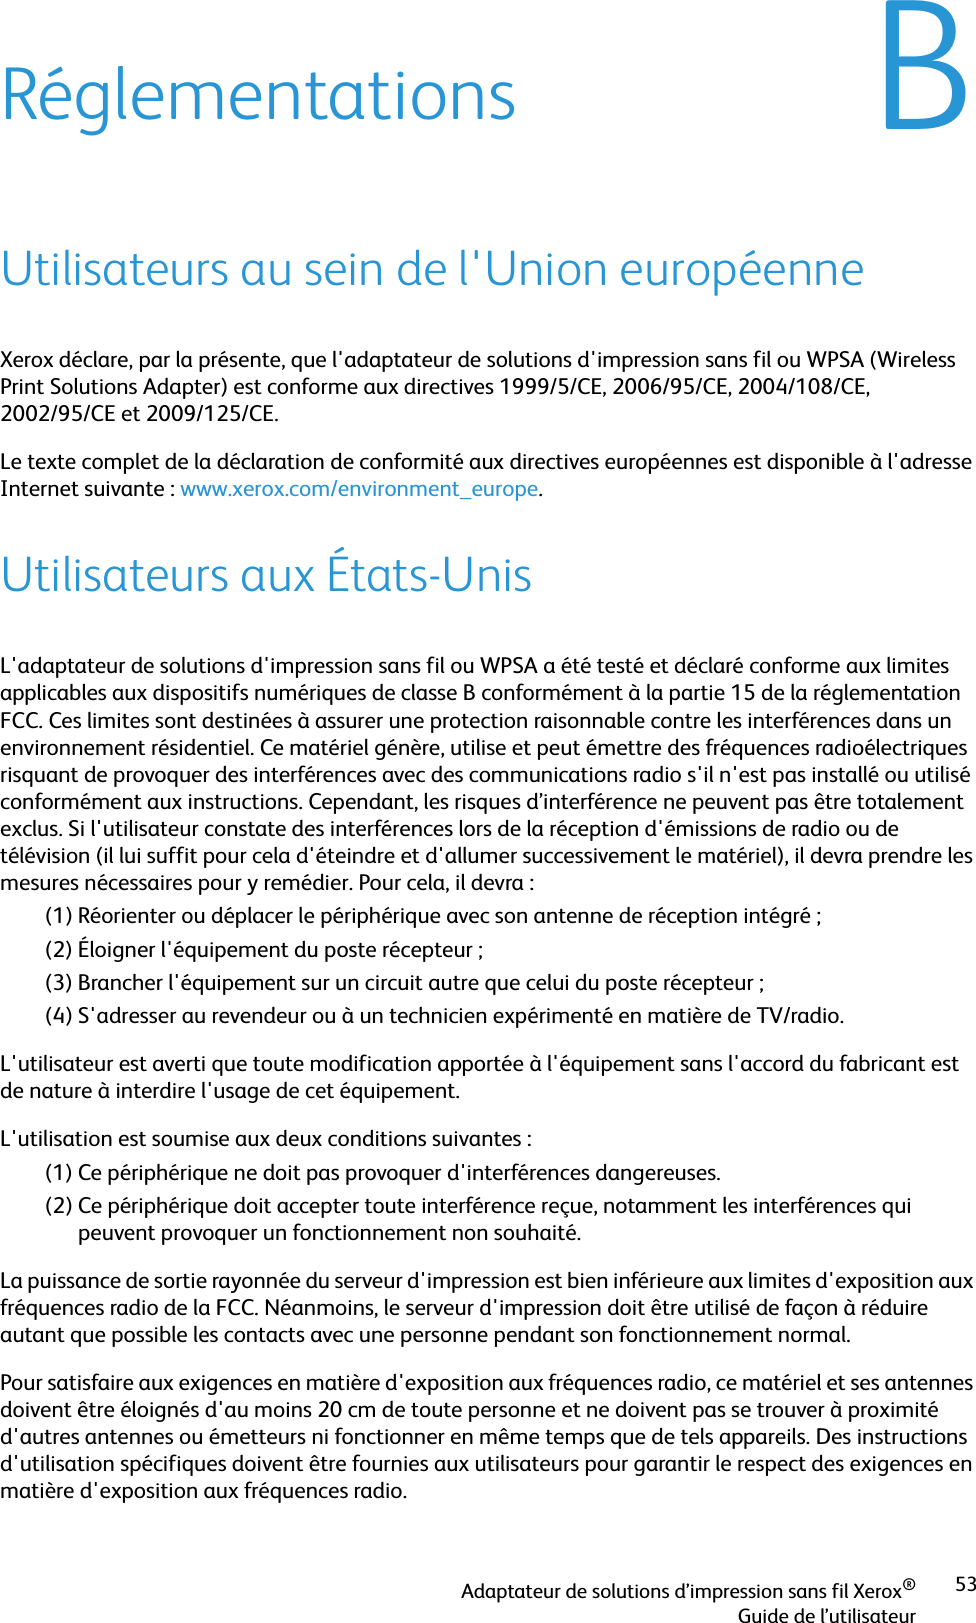 Adaptateur de solutions d’impression sans fil Xerox®Guide de l’utilisateur53BRéglementationsUtilisateurs au sein de l&apos;Union européenneXerox déclare, par la présente, que l&apos;adaptateur de solutions d&apos;impression sans fil ou WPSA (Wireless Print Solutions Adapter) est conforme aux directives 1999/5/CE, 2006/95/CE, 2004/108/CE, 2002/95/CE et 2009/125/CE. Le texte complet de la déclaration de conformité aux directives européennes est disponible à l&apos;adresse Internet suivante : www.xerox.com/environment_europe.Utilisateurs aux États-UnisL&apos;adaptateur de solutions d&apos;impression sans fil ou WPSA a été testé et déclaré conforme aux limites applicables aux dispositifs numériques de classe B conformément à la partie 15 de la réglementation FCC. Ces limites sont destinées à assurer une protection raisonnable contre les interférences dans un environnement résidentiel. Ce matériel génère, utilise et peut émettre des fréquences radioélectriques risquant de provoquer des interférences avec des communications radio s&apos;il n&apos;est pas installé ou utilisé conformément aux instructions. Cependant, les risques d’interférence ne peuvent pas être totalement exclus. Si l&apos;utilisateur constate des interférences lors de la réception d&apos;émissions de radio ou de télévision (il lui suffit pour cela d&apos;éteindre et d&apos;allumer successivement le matériel), il devra prendre les mesures nécessaires pour y remédier. Pour cela, il devra :(1) Réorienter ou déplacer le périphérique avec son antenne de réception intégré ;(2) Éloigner l&apos;équipement du poste récepteur ;(3) Brancher l&apos;équipement sur un circuit autre que celui du poste récepteur ;(4) S&apos;adresser au revendeur ou à un technicien expérimenté en matière de TV/radio.L&apos;utilisateur est averti que toute modification apportée à l&apos;équipement sans l&apos;accord du fabricant est de nature à interdire l&apos;usage de cet équipement.L&apos;utilisation est soumise aux deux conditions suivantes :(1) Ce périphérique ne doit pas provoquer d&apos;interférences dangereuses.(2) Ce périphérique doit accepter toute interférence reçue, notamment les interférences qui peuvent provoquer un fonctionnement non souhaité.La puissance de sortie rayonnée du serveur d&apos;impression est bien inférieure aux limites d&apos;exposition aux fréquences radio de la FCC. Néanmoins, le serveur d&apos;impression doit être utilisé de façon à réduire autant que possible les contacts avec une personne pendant son fonctionnement normal.Pour satisfaire aux exigences en matière d&apos;exposition aux fréquences radio, ce matériel et ses antennes doivent être éloignés d&apos;au moins 20 cm de toute personne et ne doivent pas se trouver à proximité d&apos;autres antennes ou émetteurs ni fonctionner en même temps que de tels appareils. Des instructions d&apos;utilisation spécifiques doivent être fournies aux utilisateurs pour garantir le respect des exigences en matière d&apos;exposition aux fréquences radio.